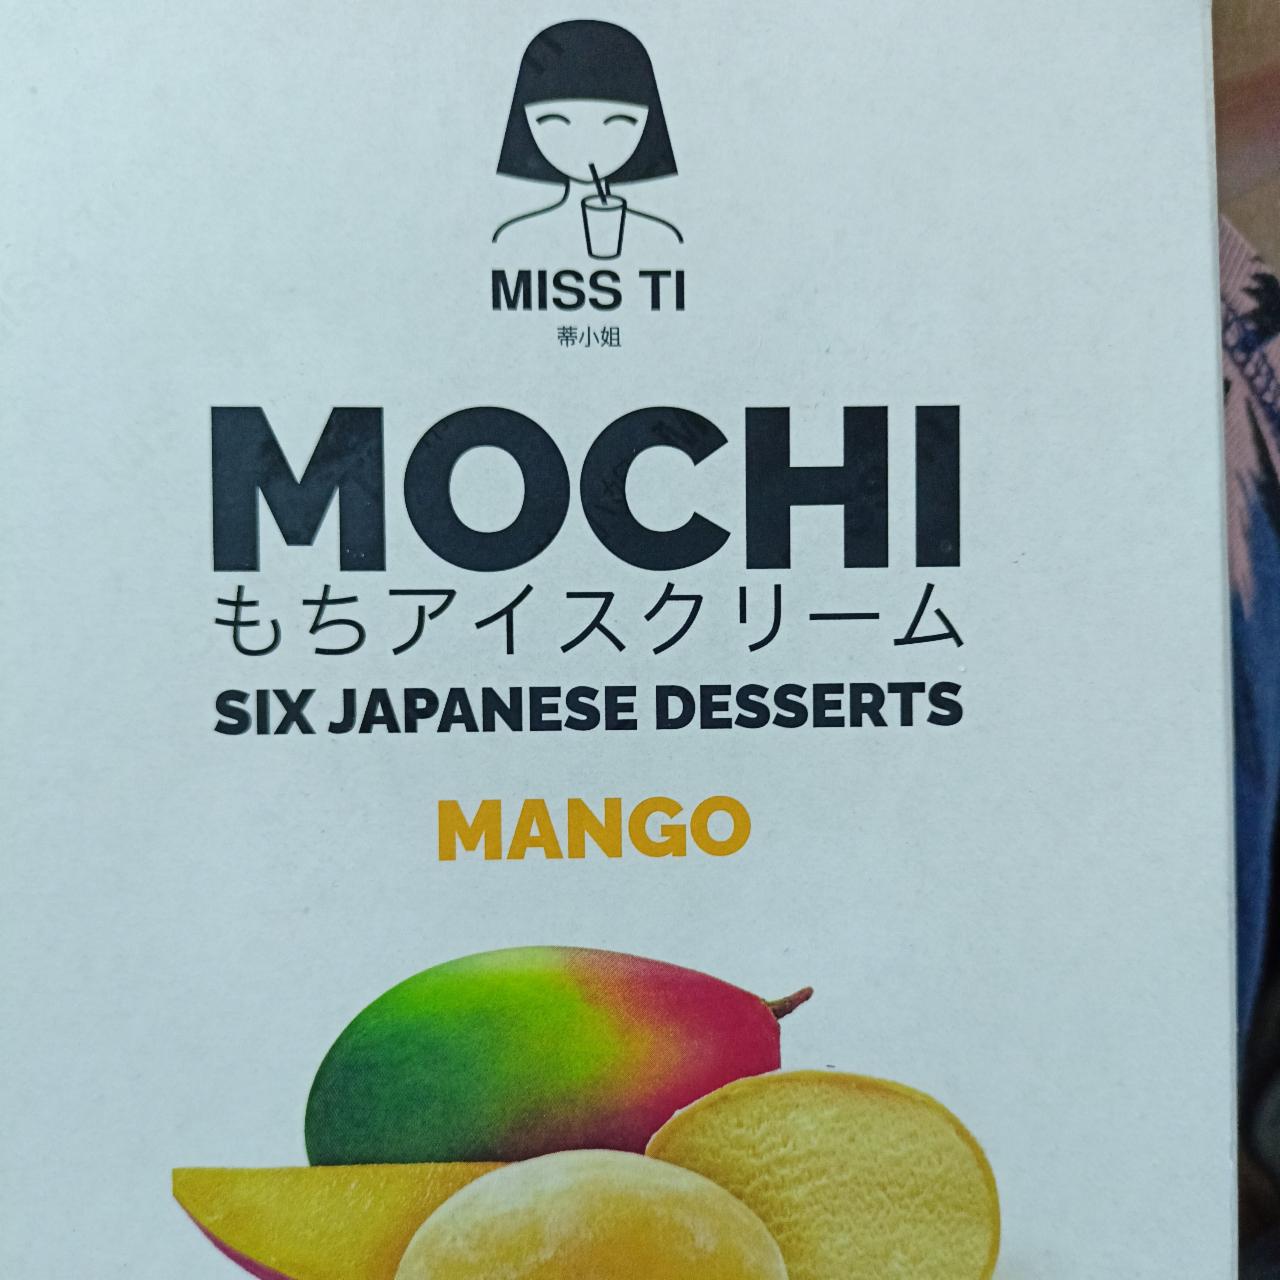 Zdjęcia - Lody mochi mango Miss ti